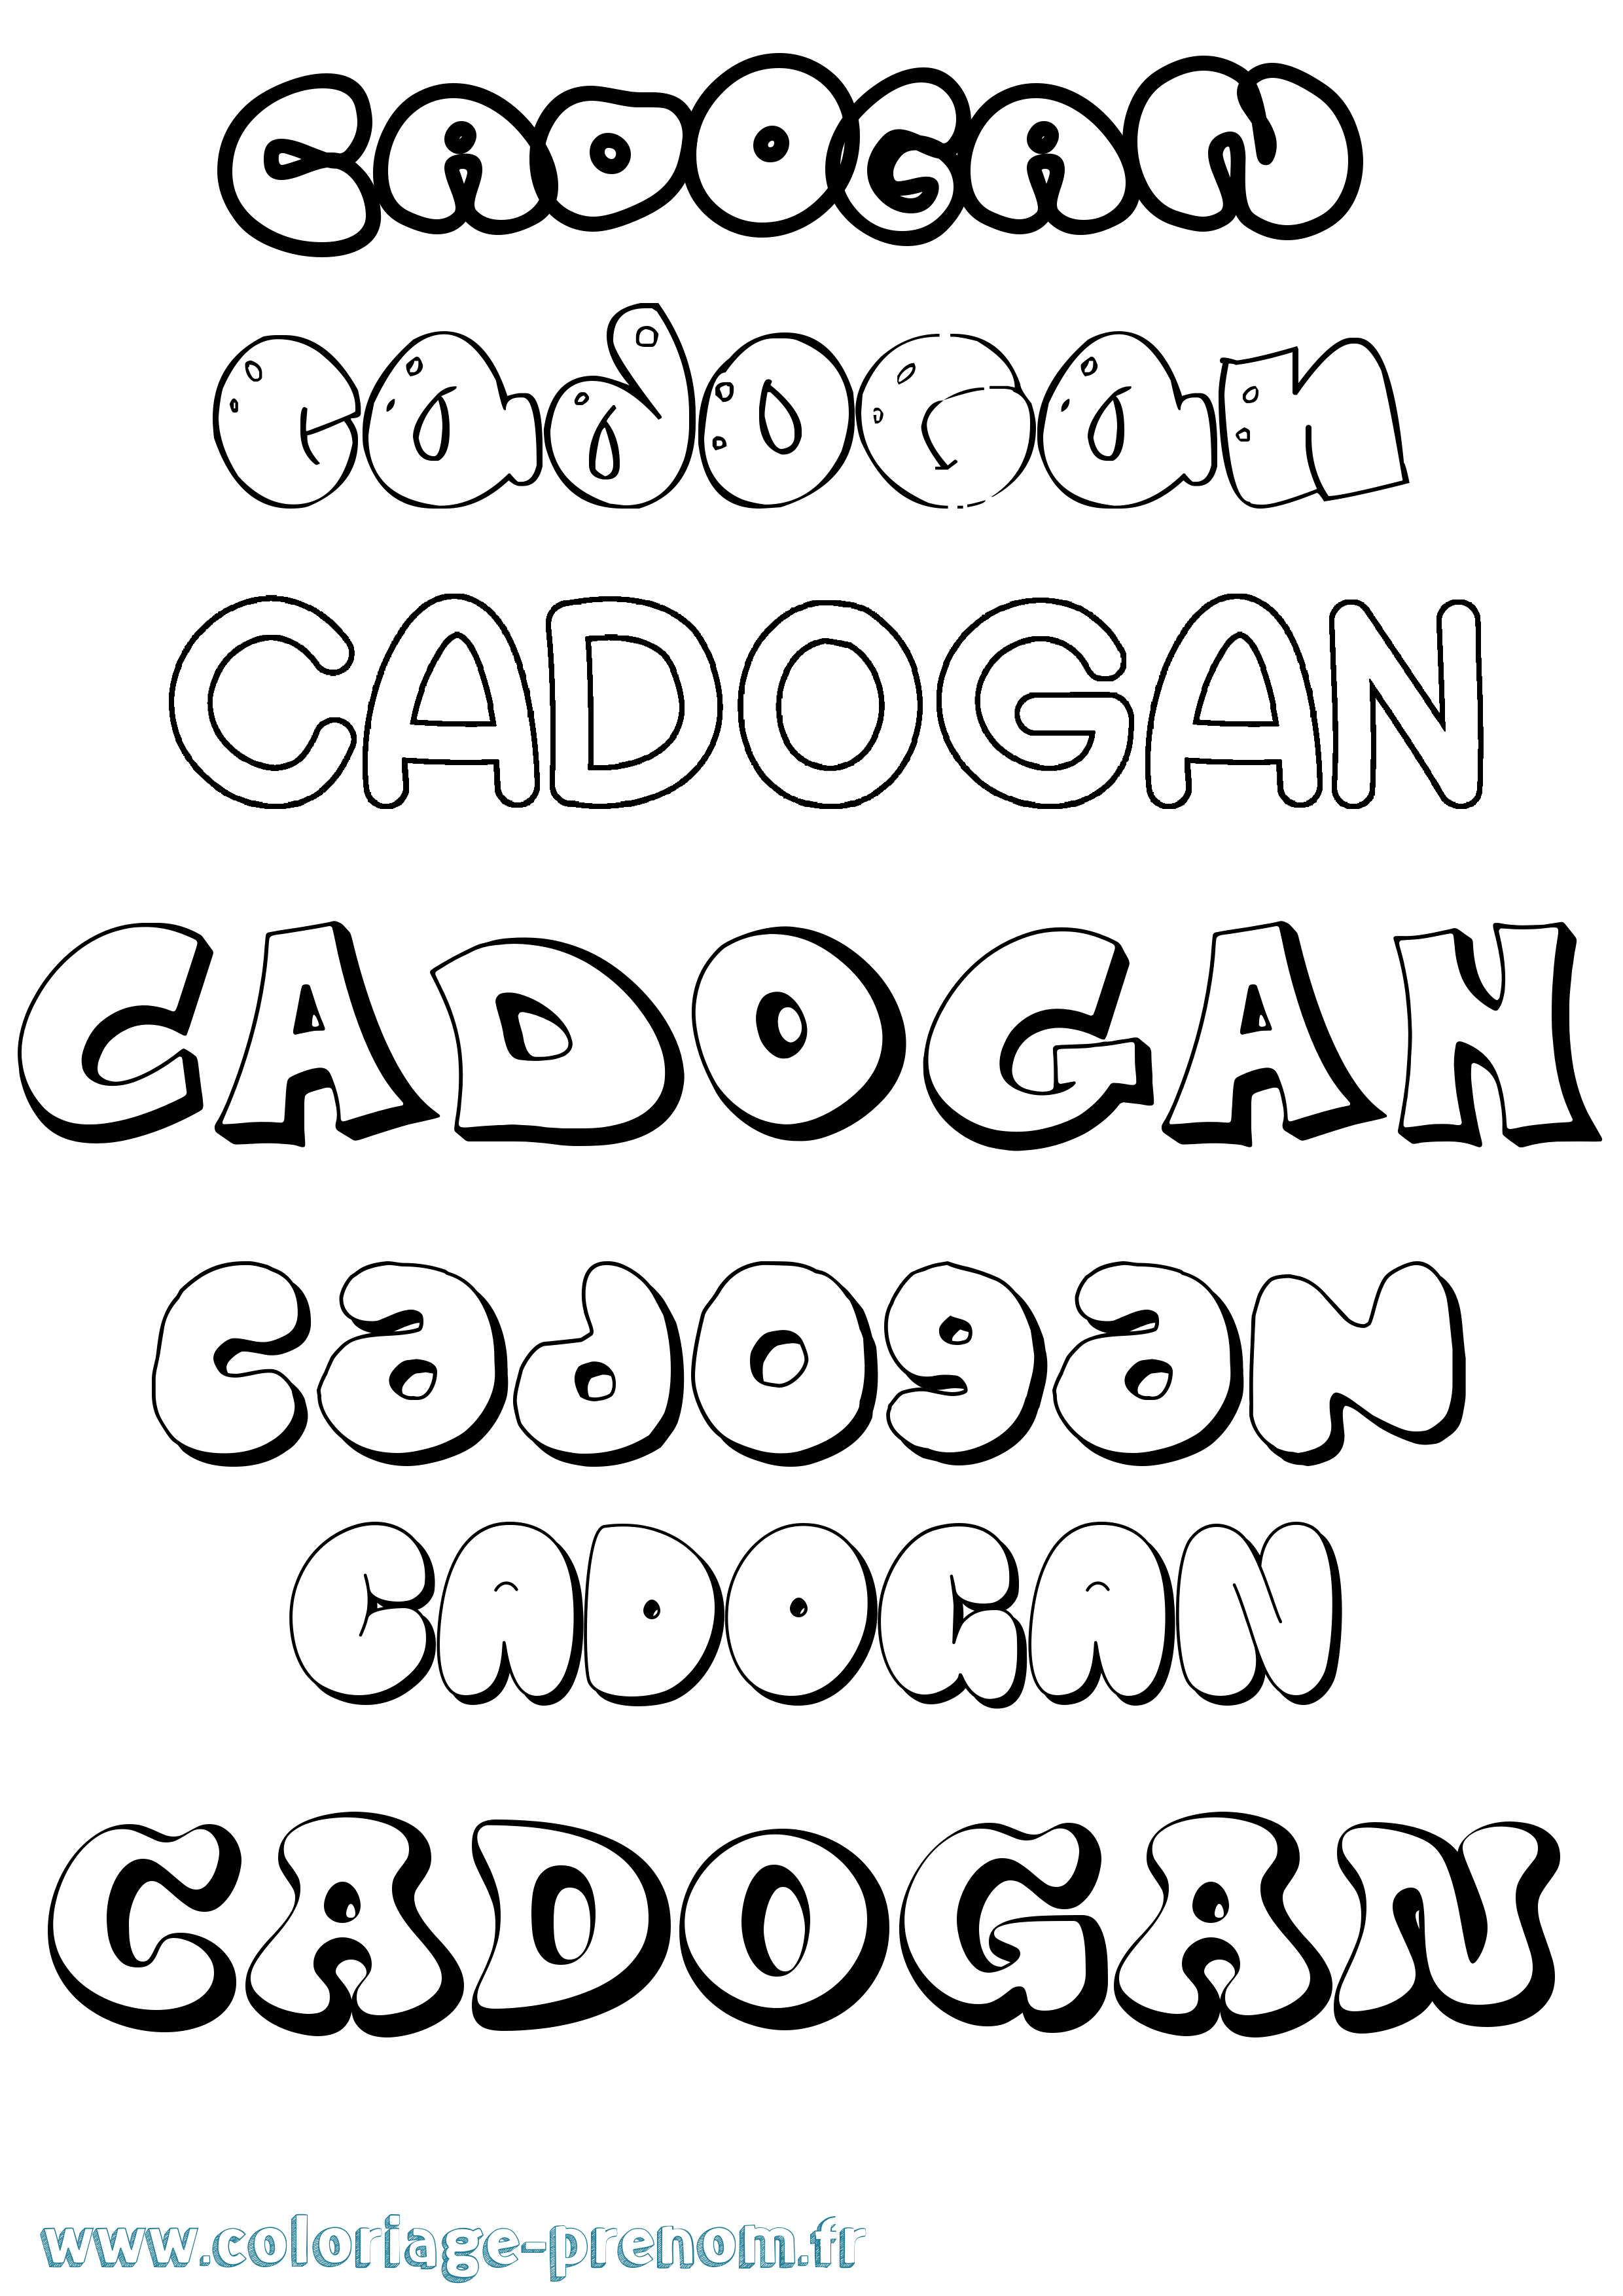 Coloriage prénom Cadogan Bubble